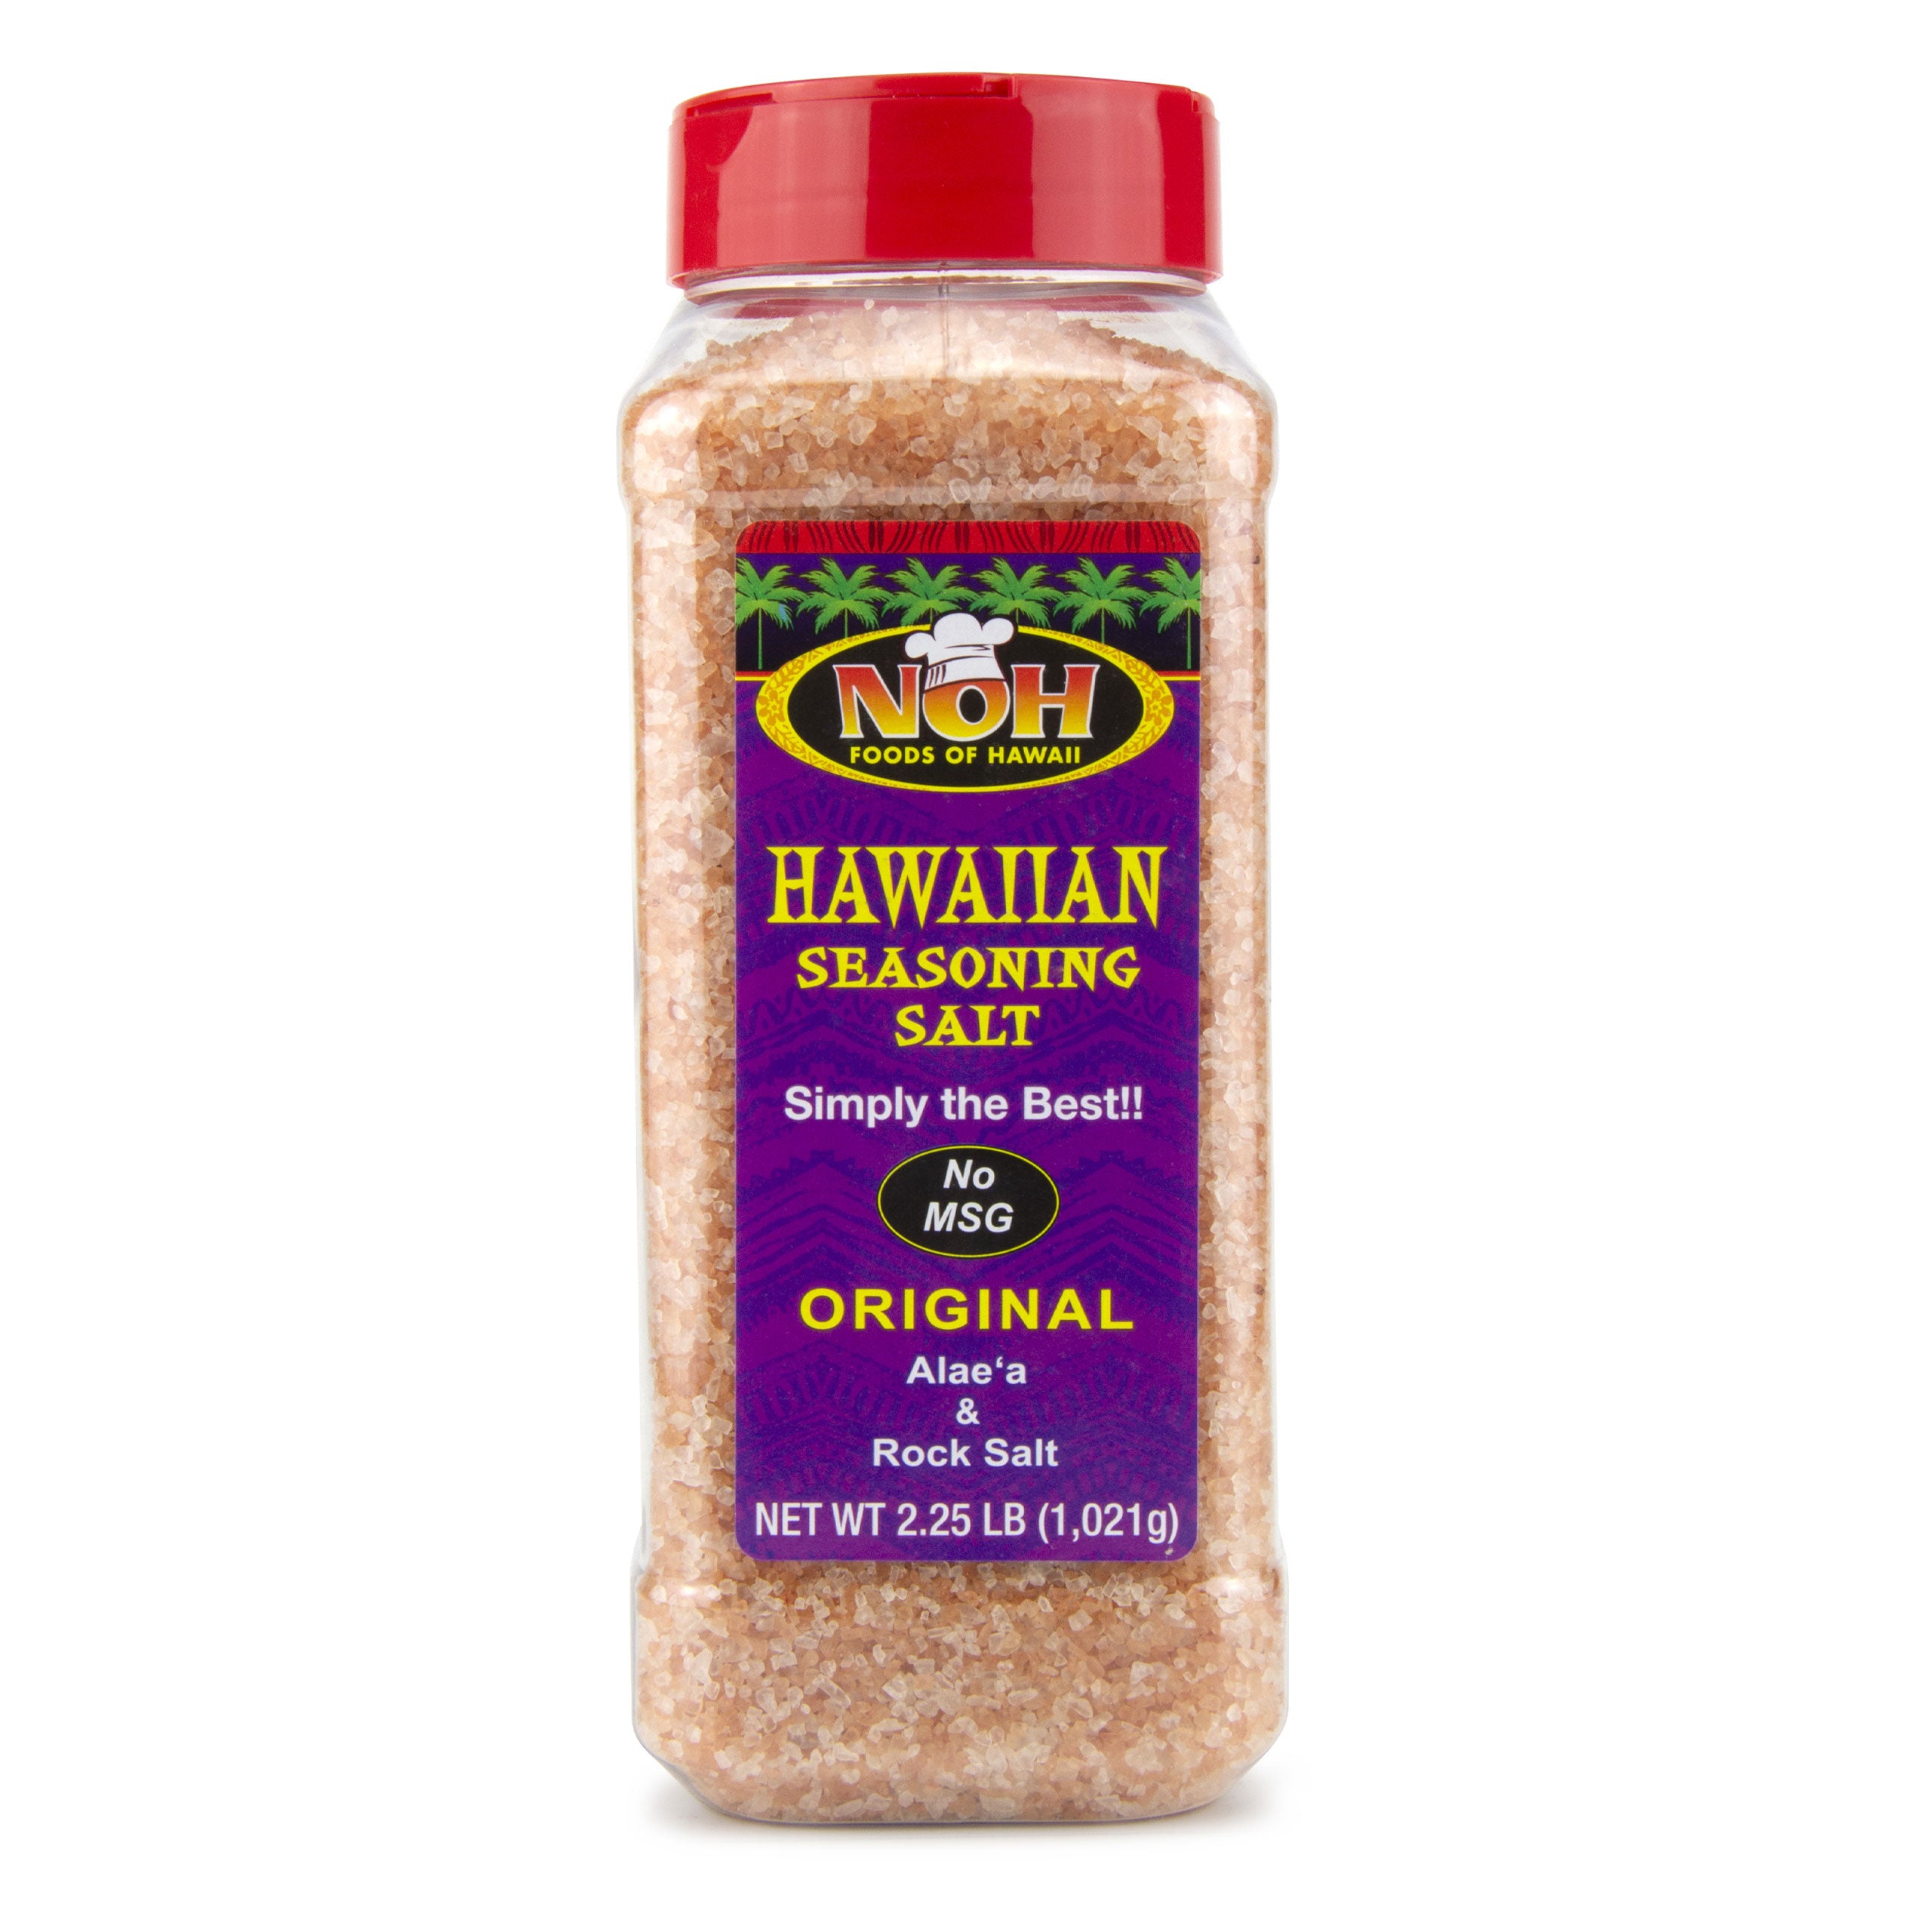 Noh Foods Of Hawaii Seasoning Salt, Hawaiian, Original - 9 oz